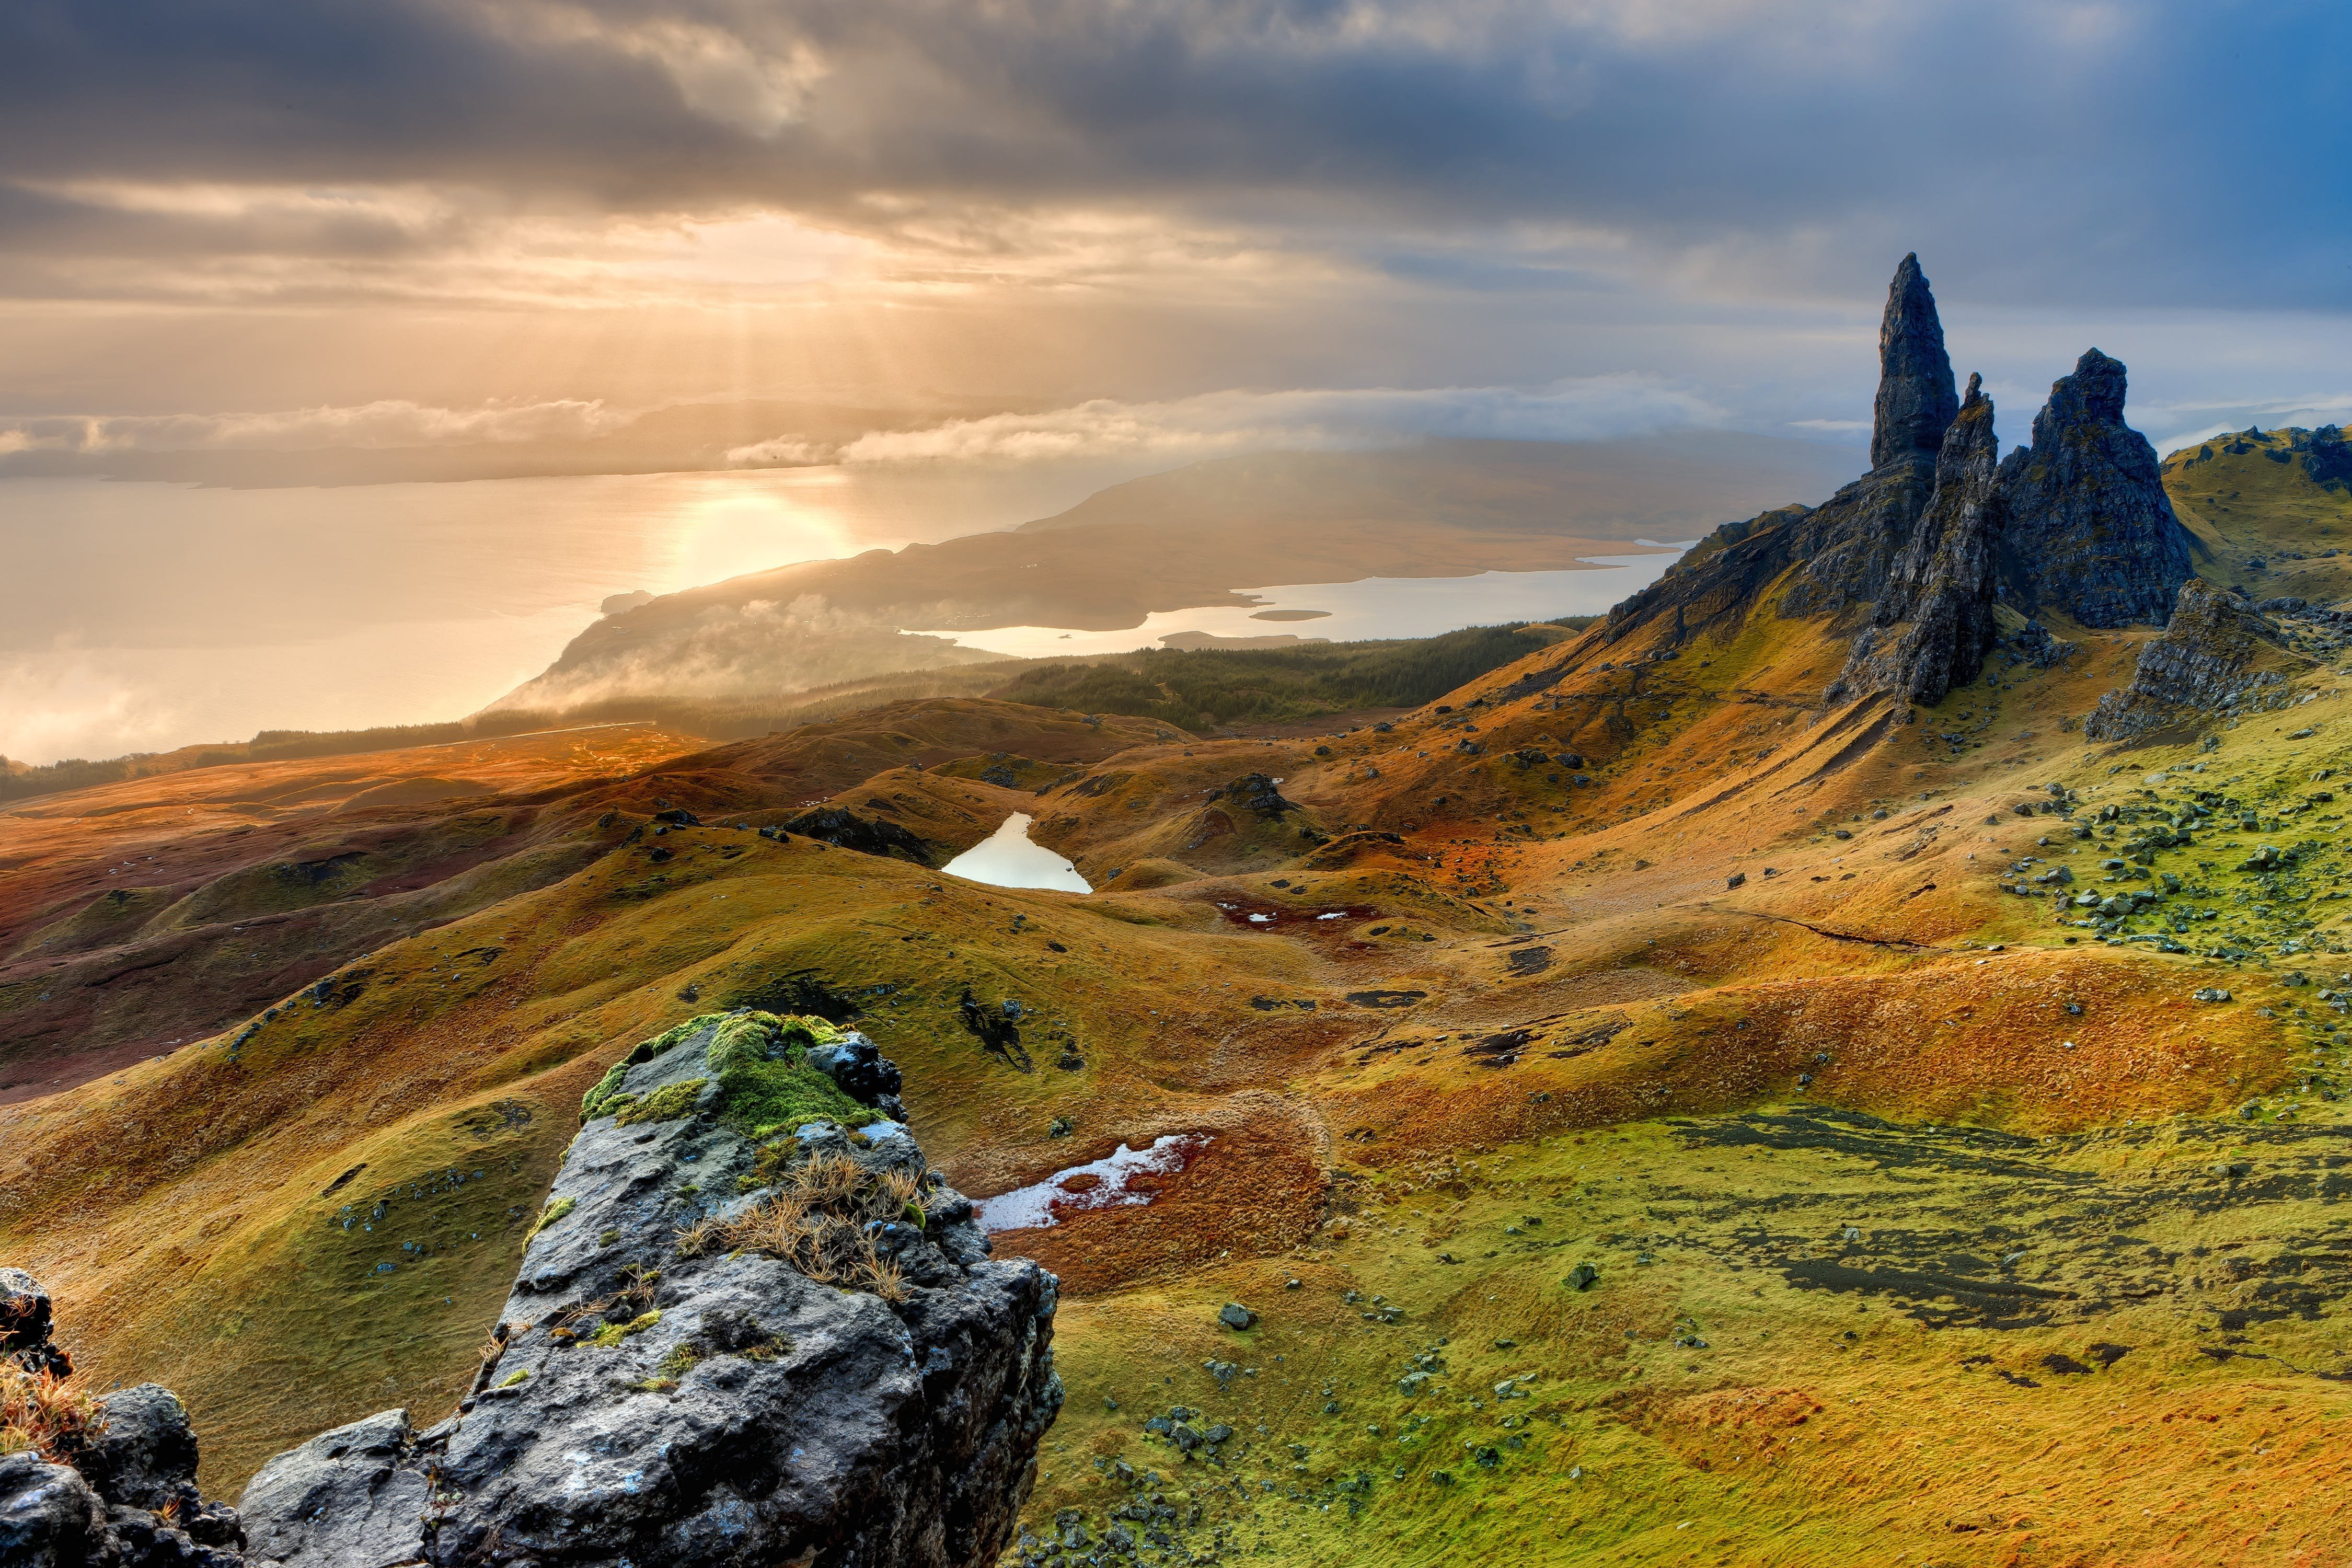 The island was beautiful. Остров Скай, Шотландия (Isle of Skye). Шотландия Highlands. Долина фей остров Скай Шотландия. Хайленд Шотландия Высокогорье.